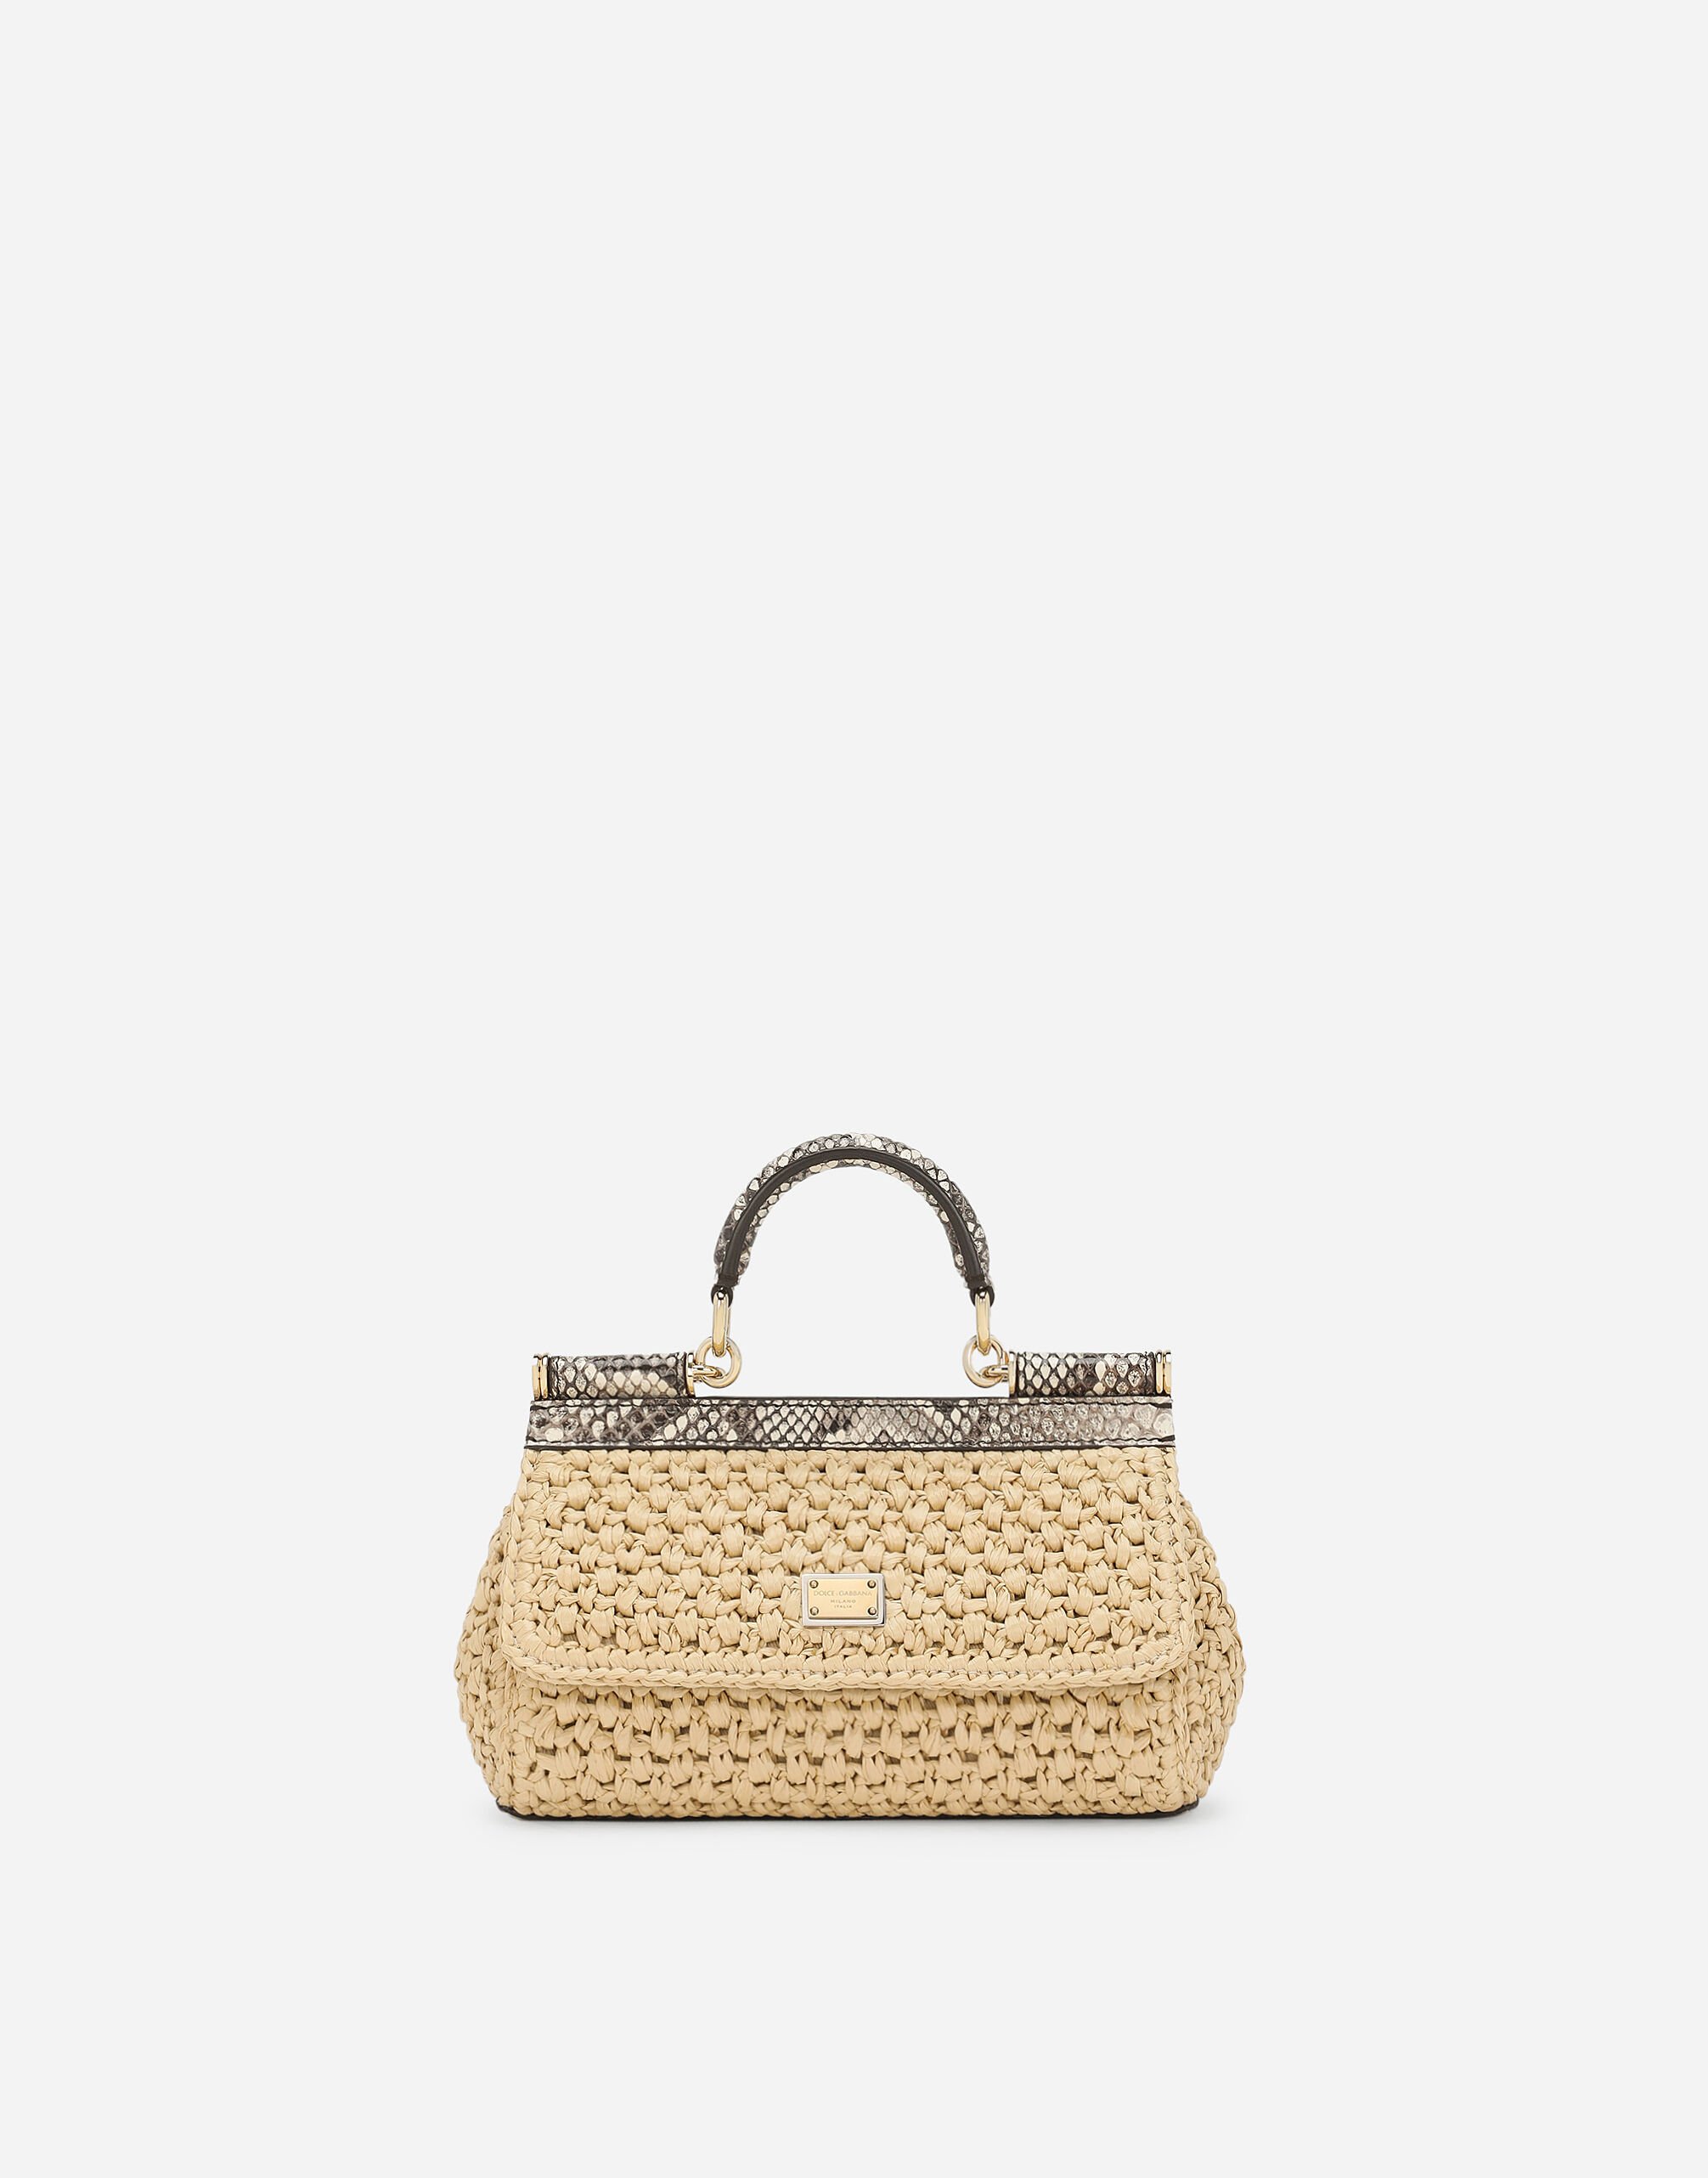 Dolce & Gabbana حقيبة يد سيسيلي صغيرة متعدد الألوان BB7655A4547